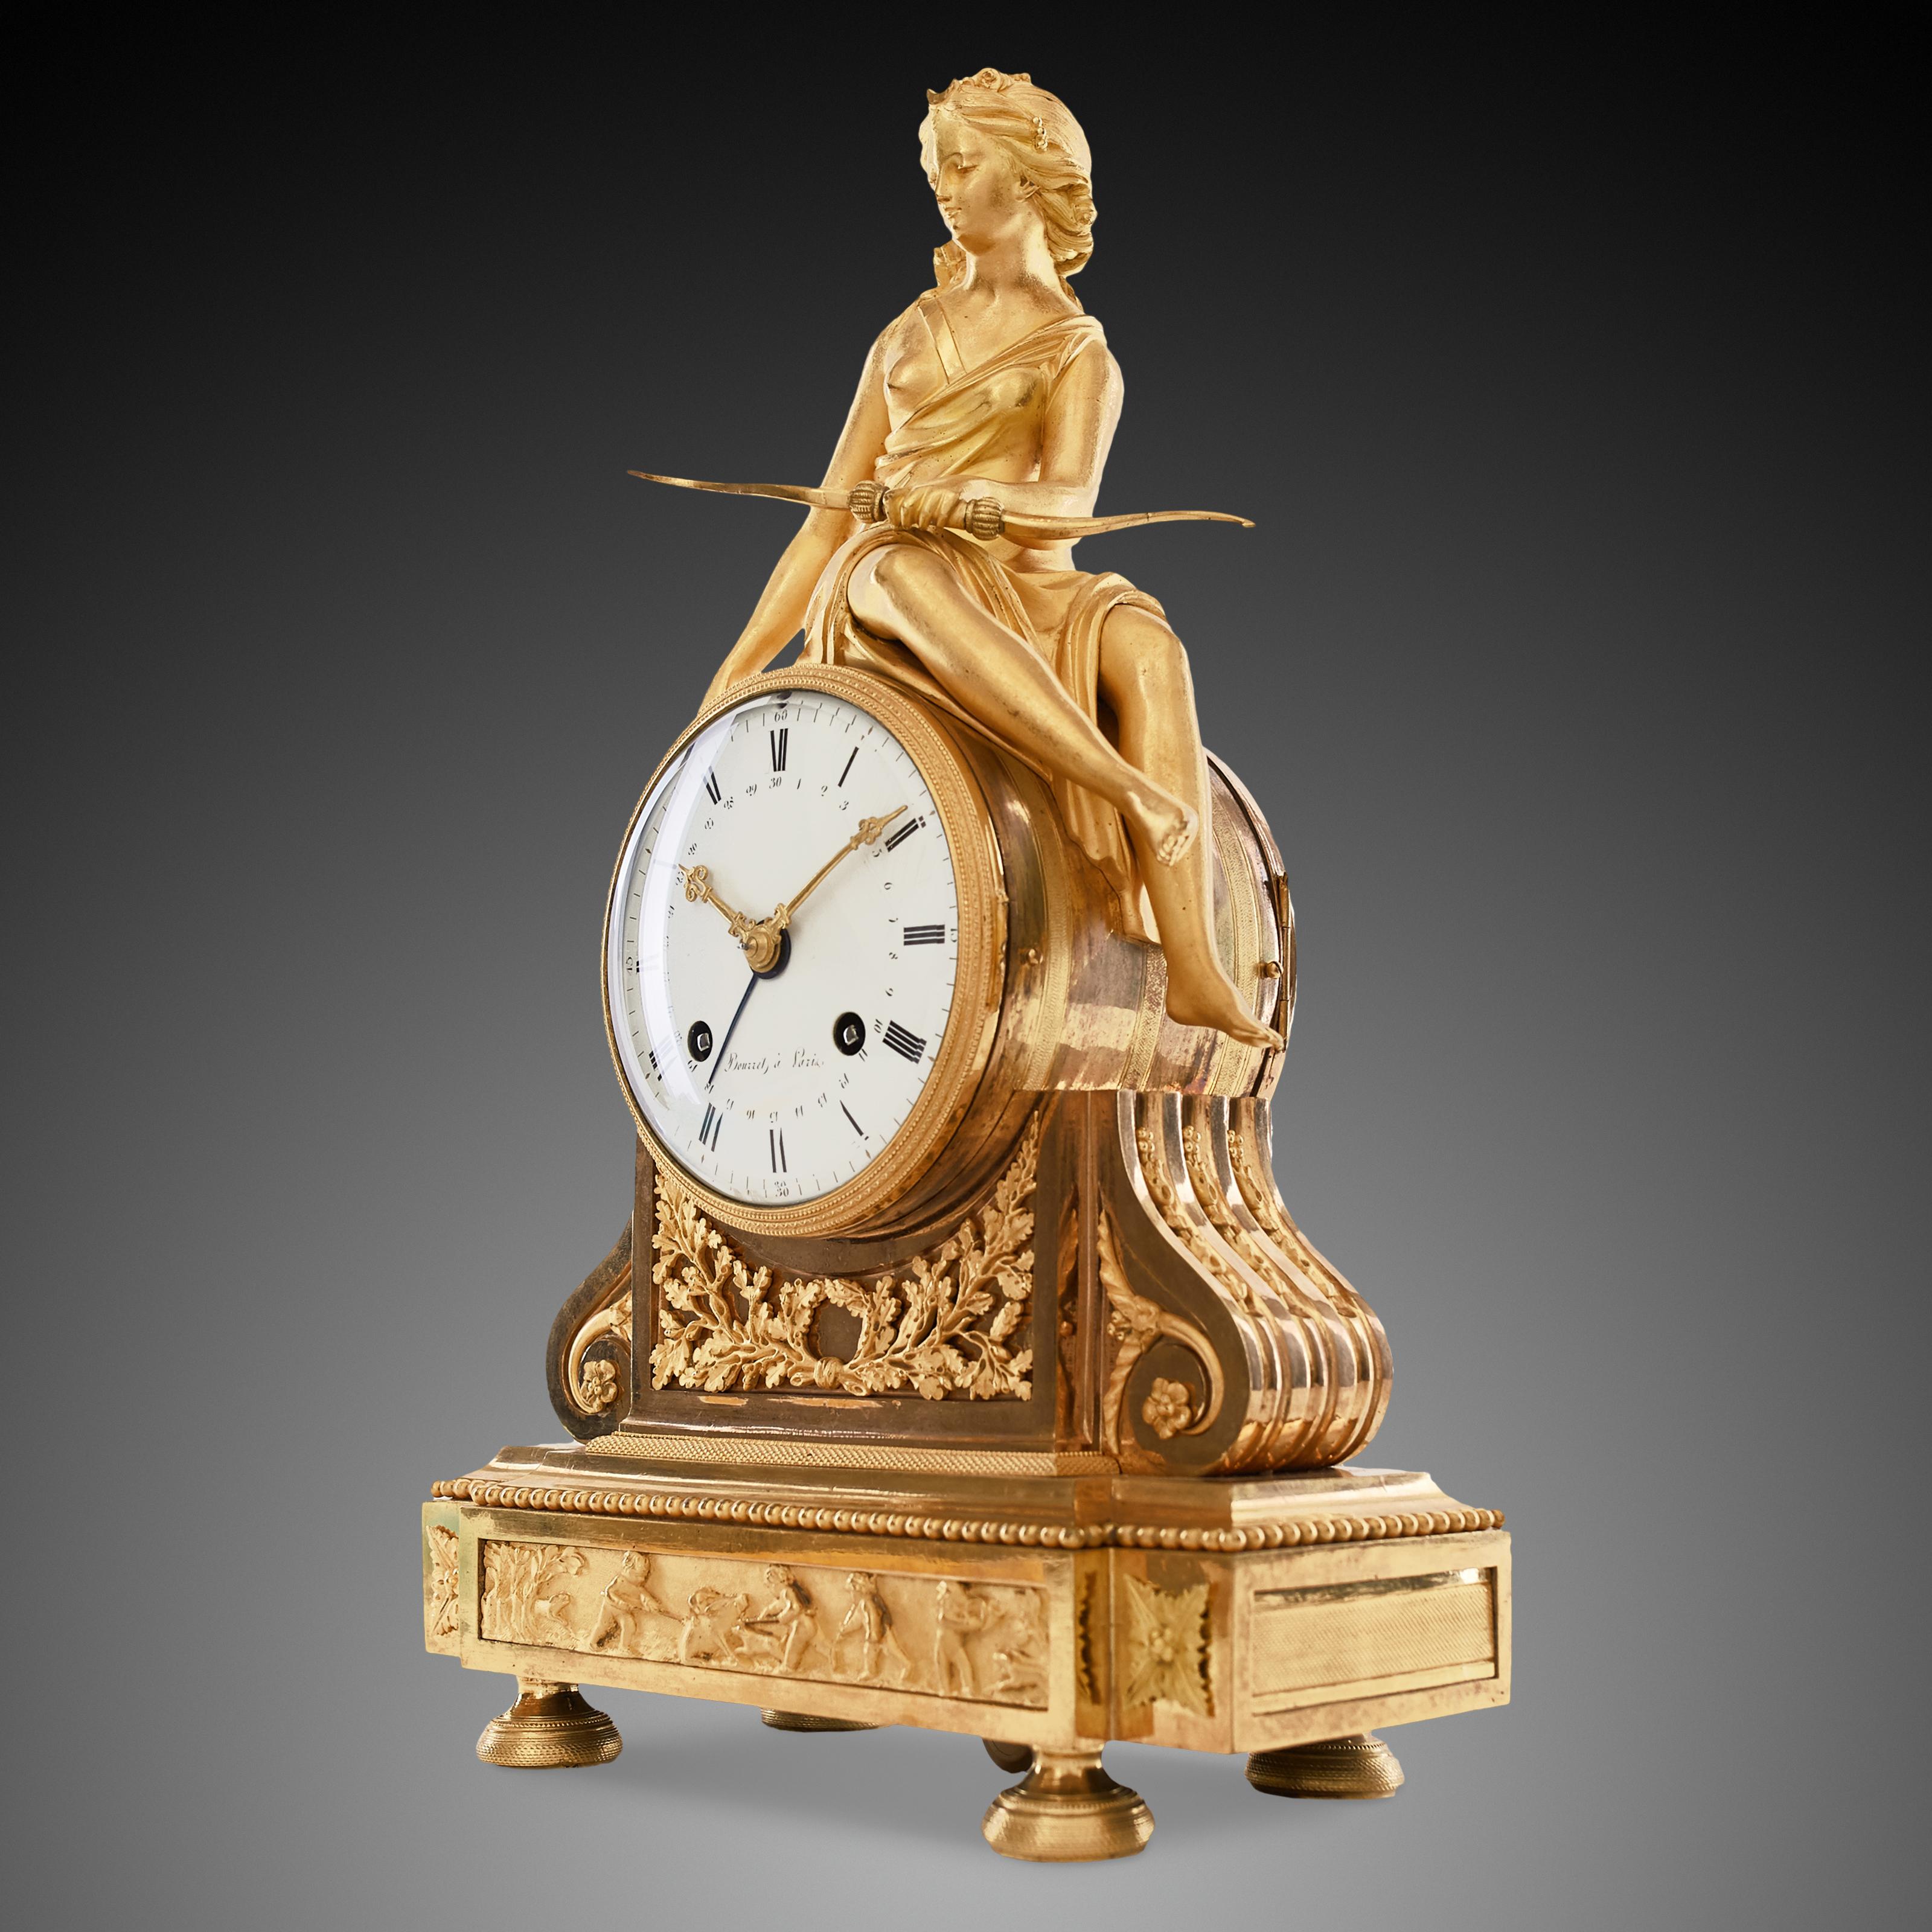 Die Kaminsimsuhr aus Ormol (vergoldete Bronze) zeigt die schöne Figur der römischen Jagdgöttin Diana, begleitet von verschiedenen Emblemen. Diana sitzt auf dem runden Uhrenumschlag und hält in der linken Hand einen Pfeil und in der rechten Hand